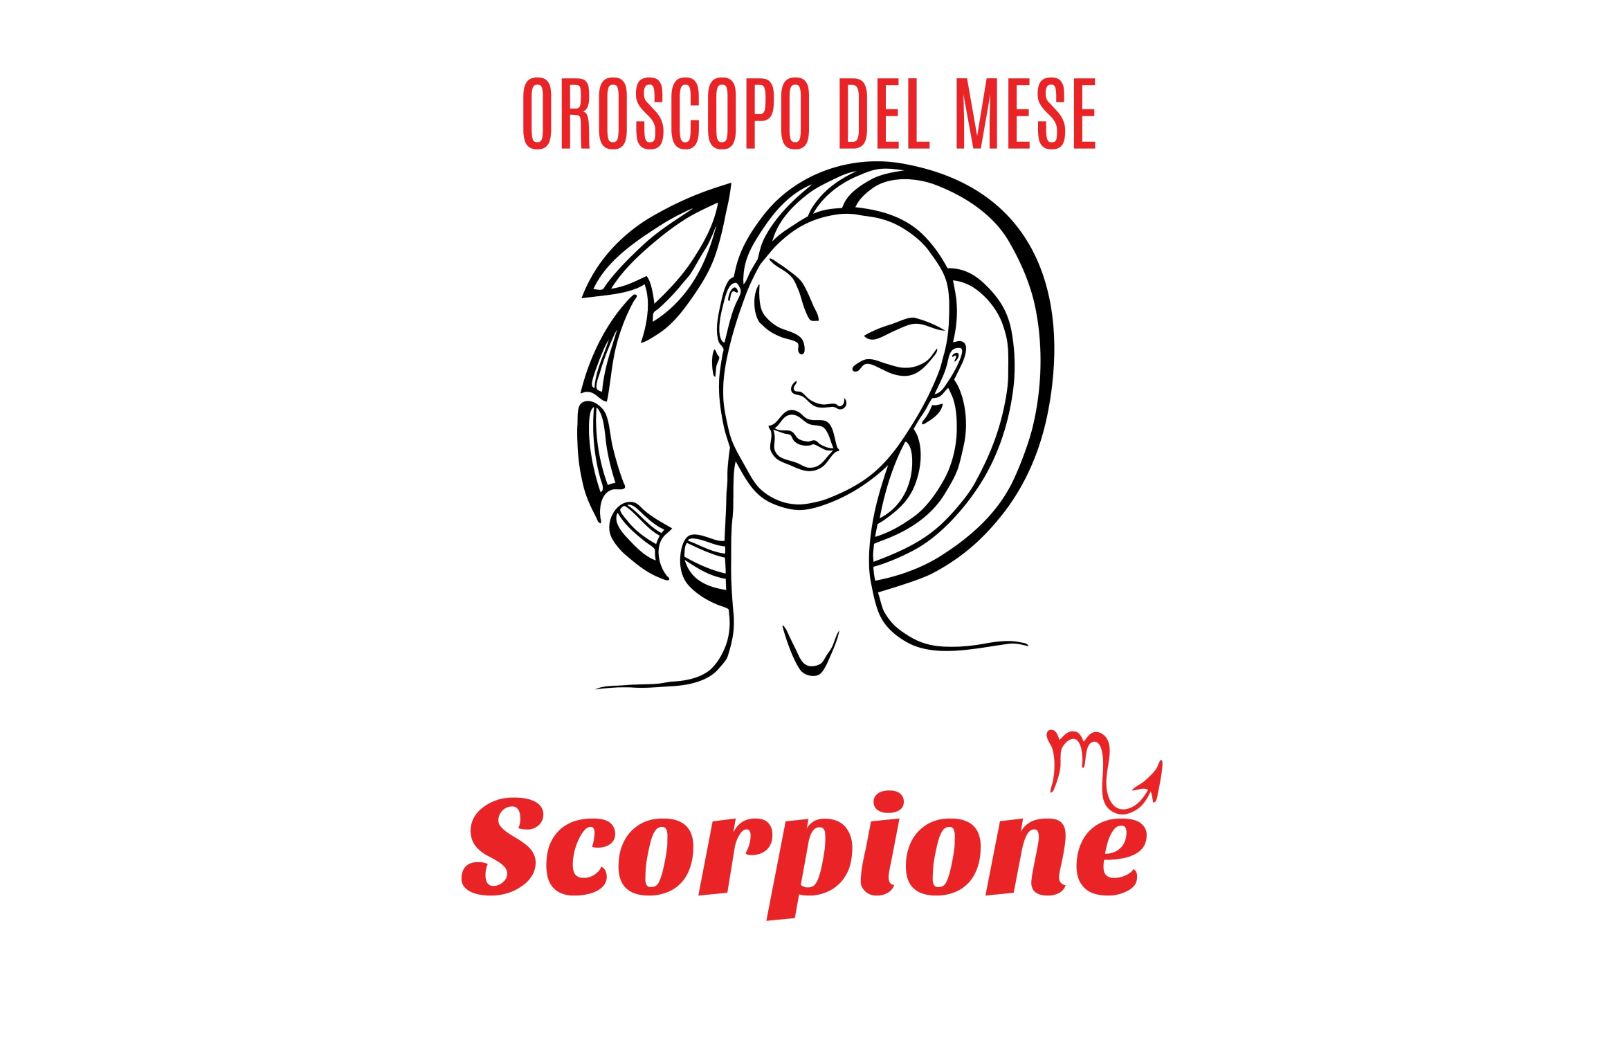 Oroscopo del mese: Scorpione - gennaio 2020